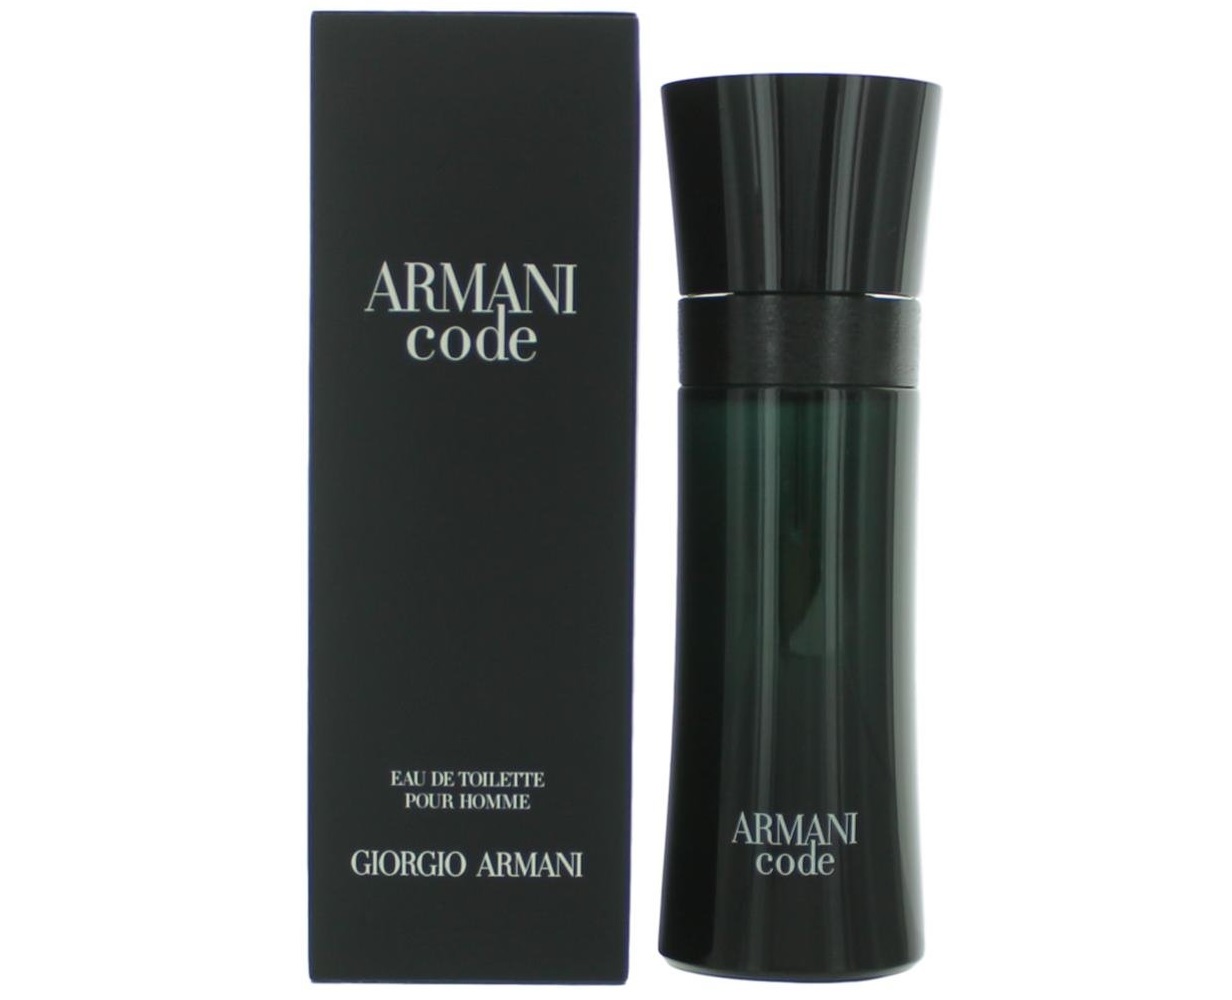 armani code cologne price